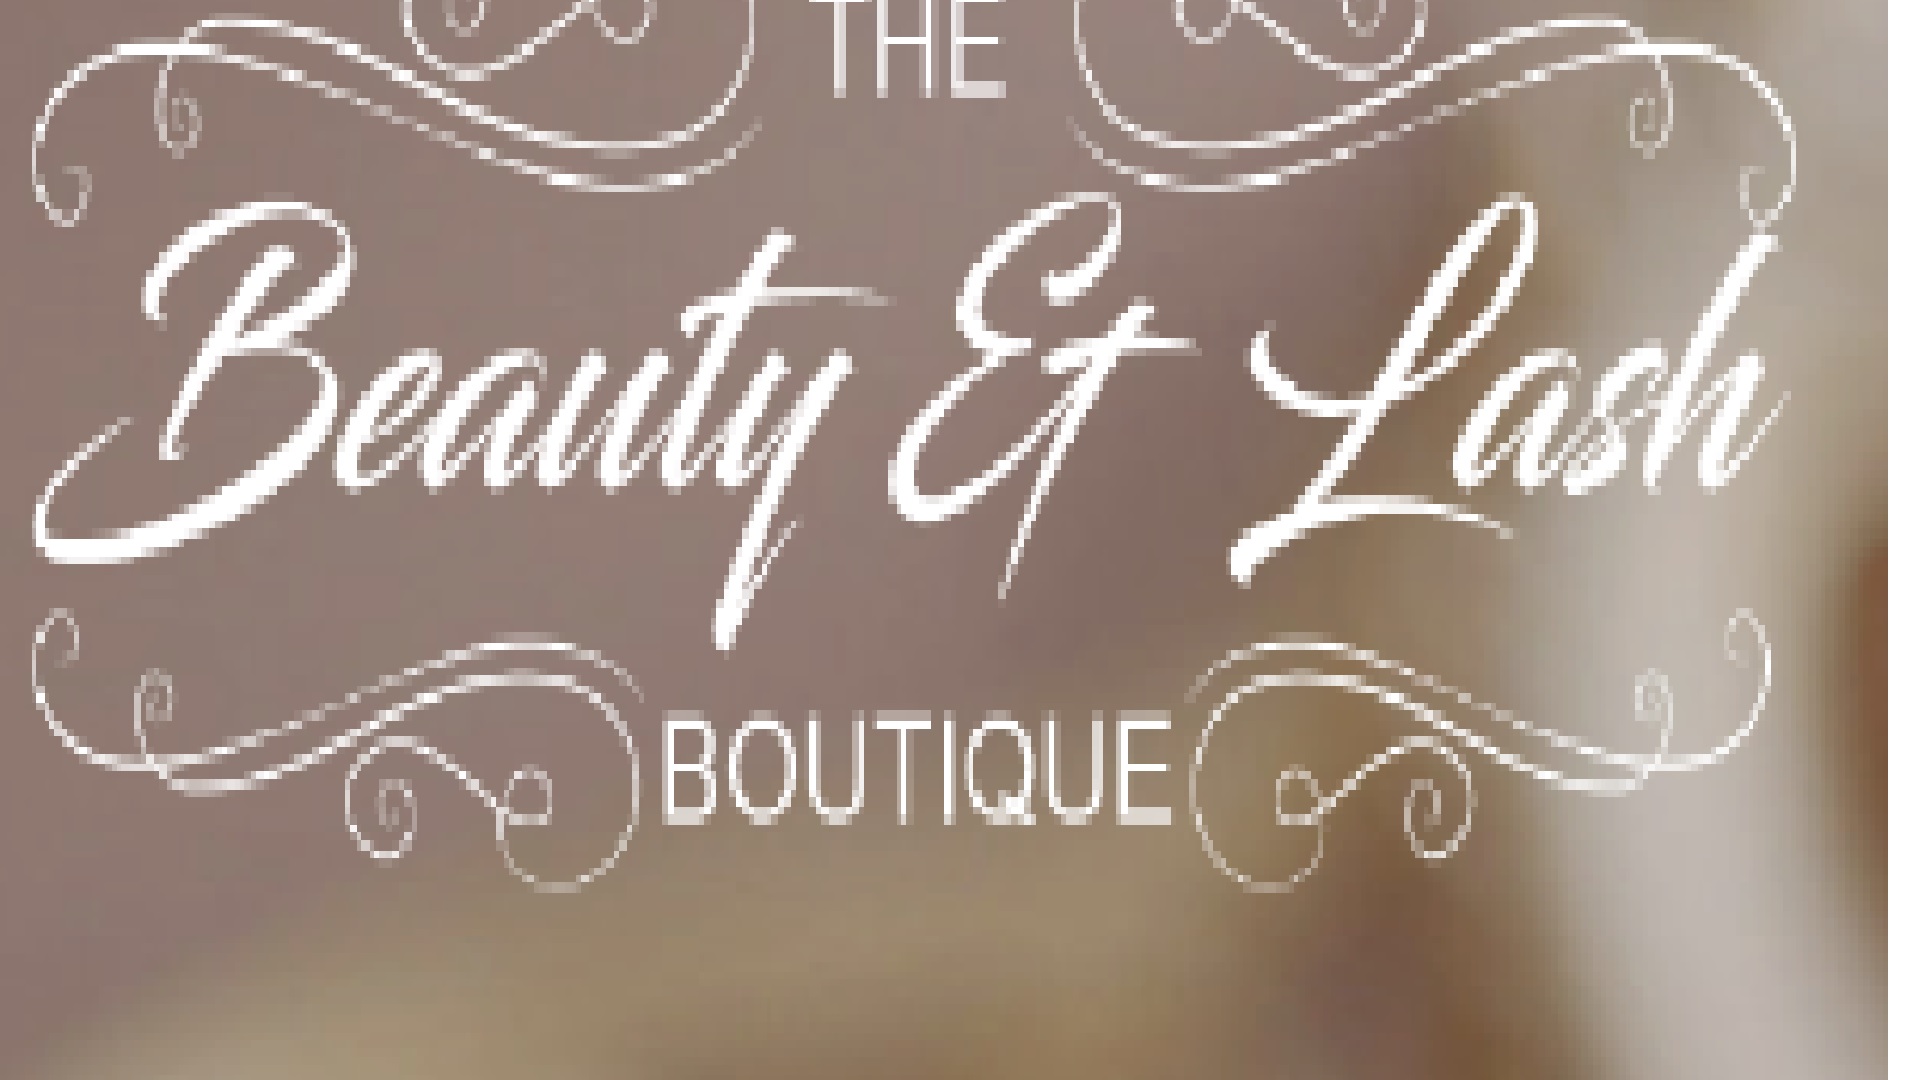 The Beauty & Lash Boutique